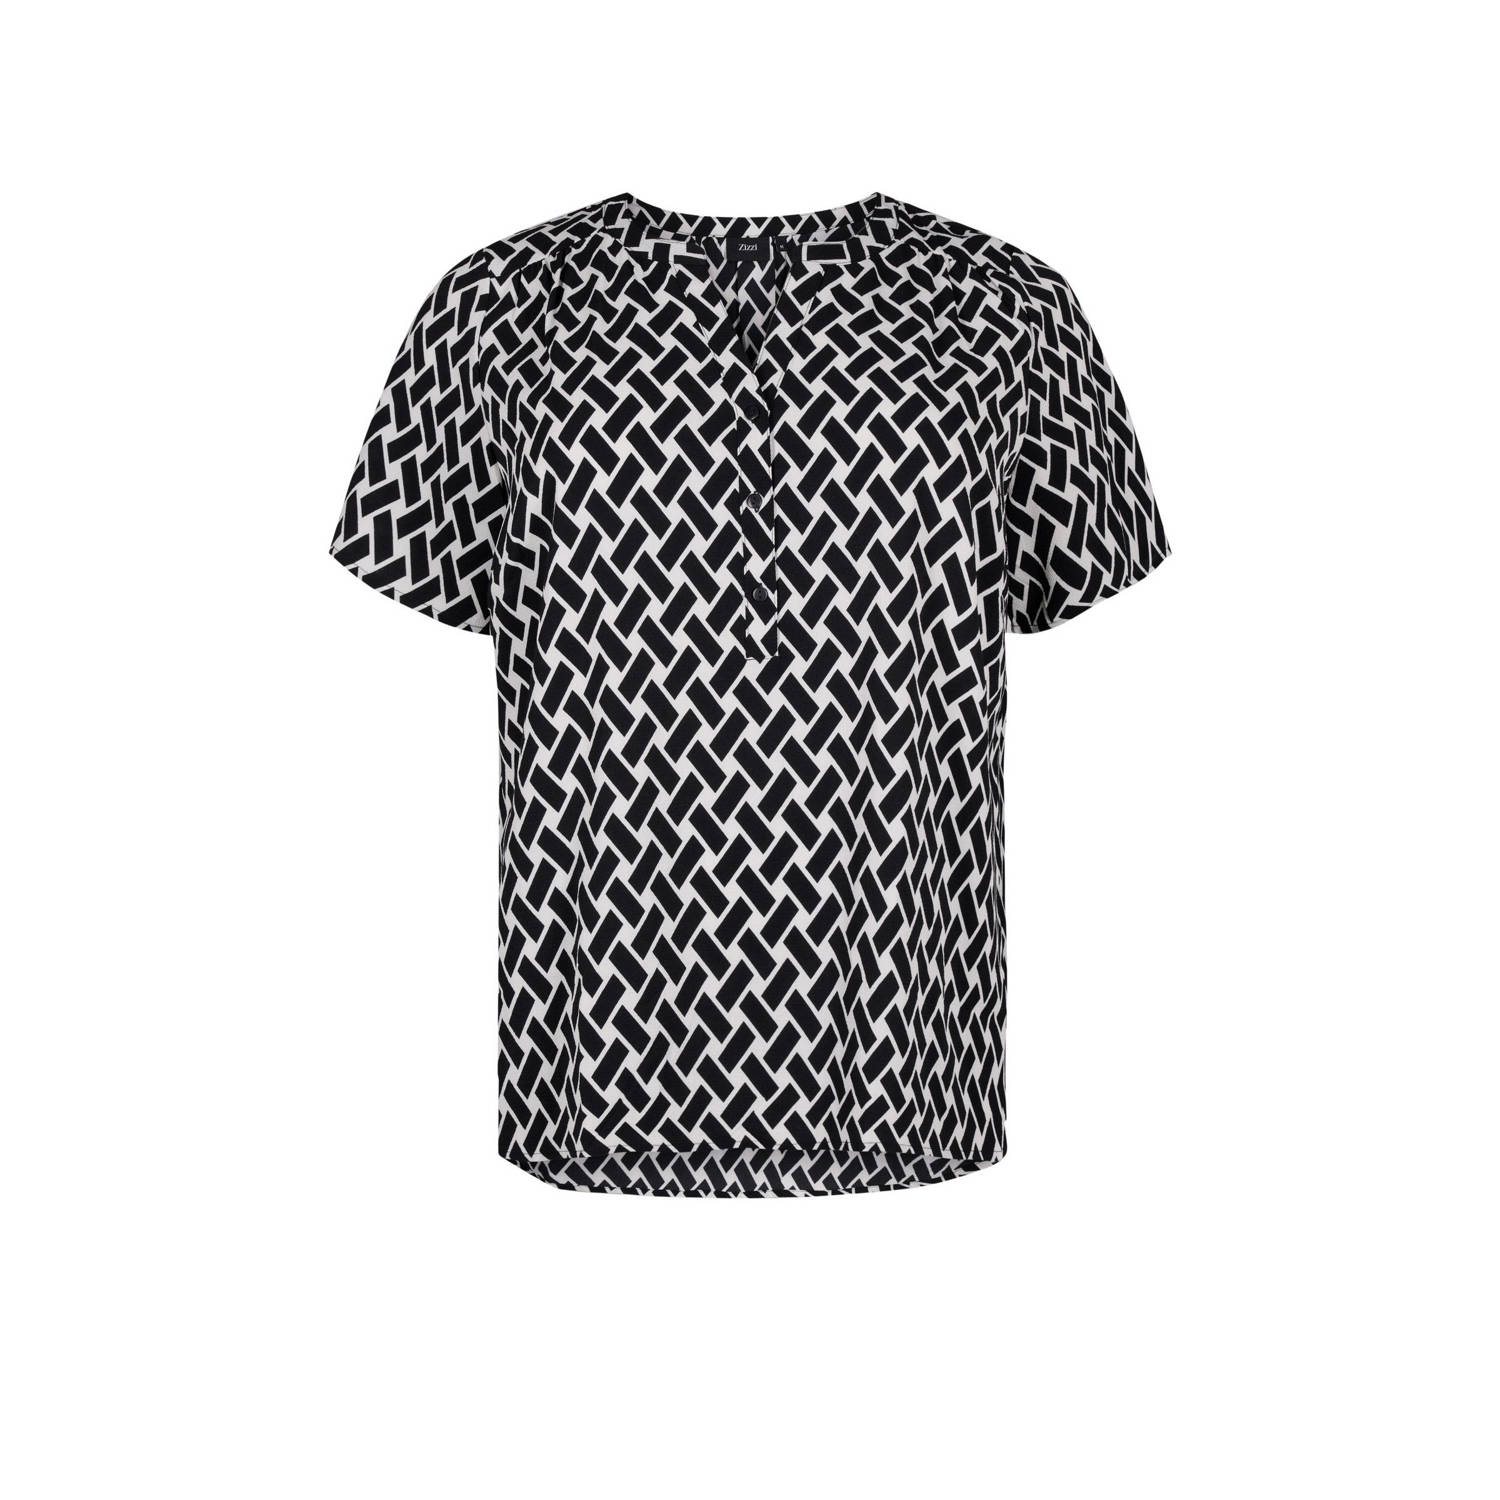 Zizzi blousetop met all over print zwart wit